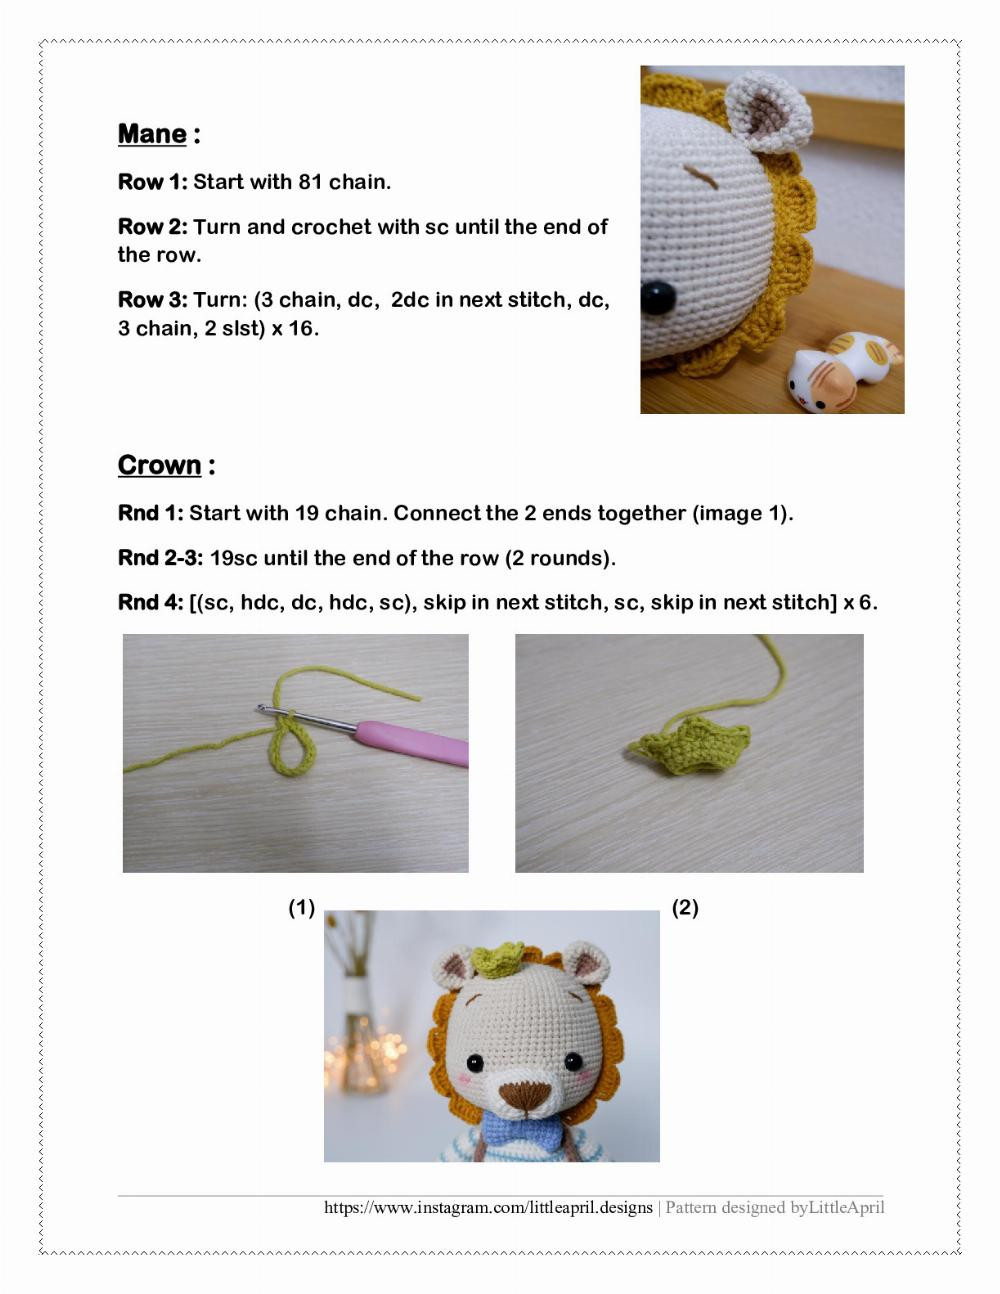 Neil Lion doll crochet pattern